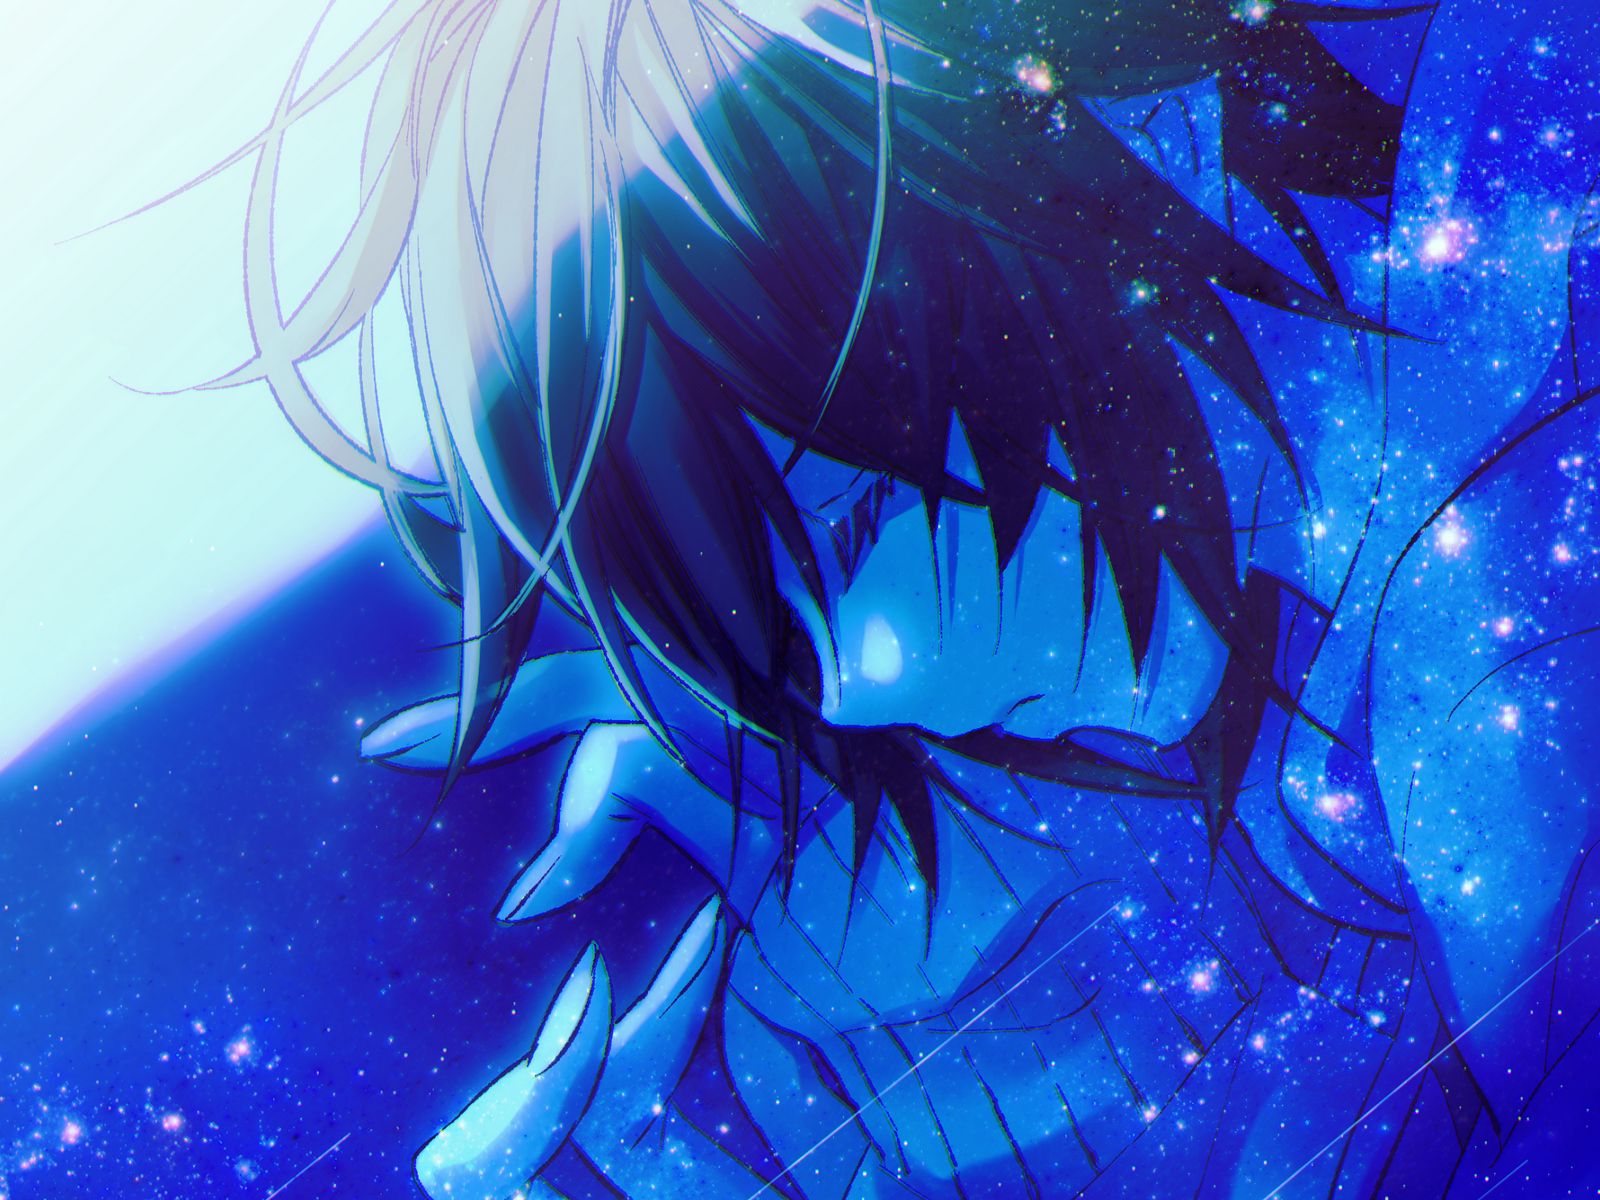 Manga Anime Sad Anime Anime Boy Crying Hot Anime Sad Anime Boy Cool PNG  Image With Transparent Background  TOPpng